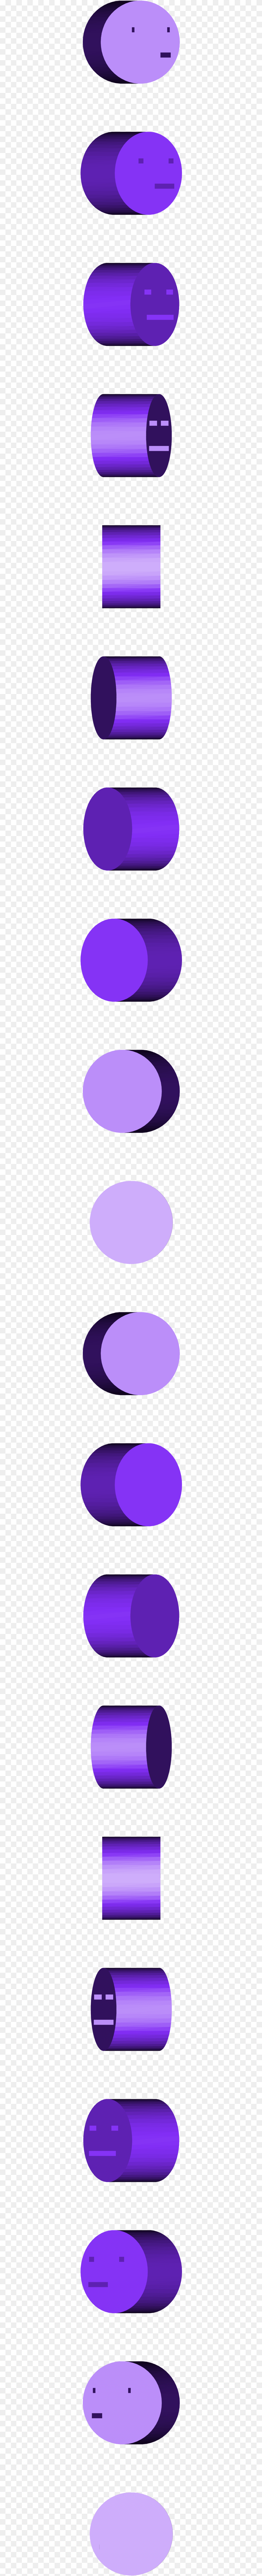 Circle, Light, Lighting, Purple, Spiral Png Image